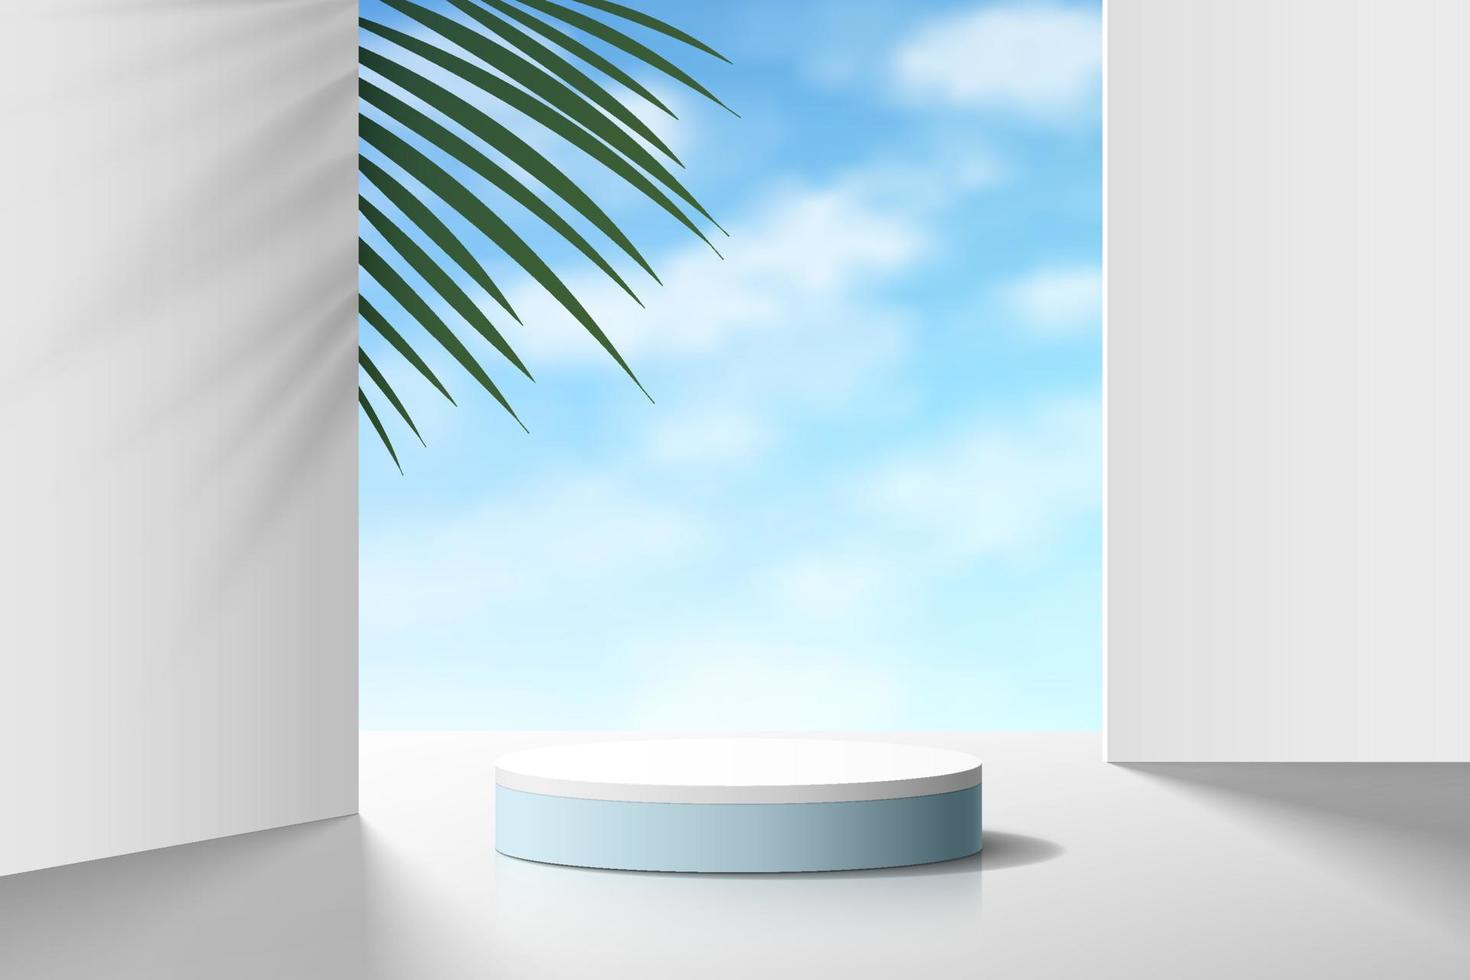 podium de piédestal de cylindre 3d blanc et bleu réaliste avec ciel bleu nuage et feuille de palmier. plate-forme géométrique de salle de studio abstraite de vecteur. scène minimale pour la vitrine des produits, l'affichage de la promotion. vecteur